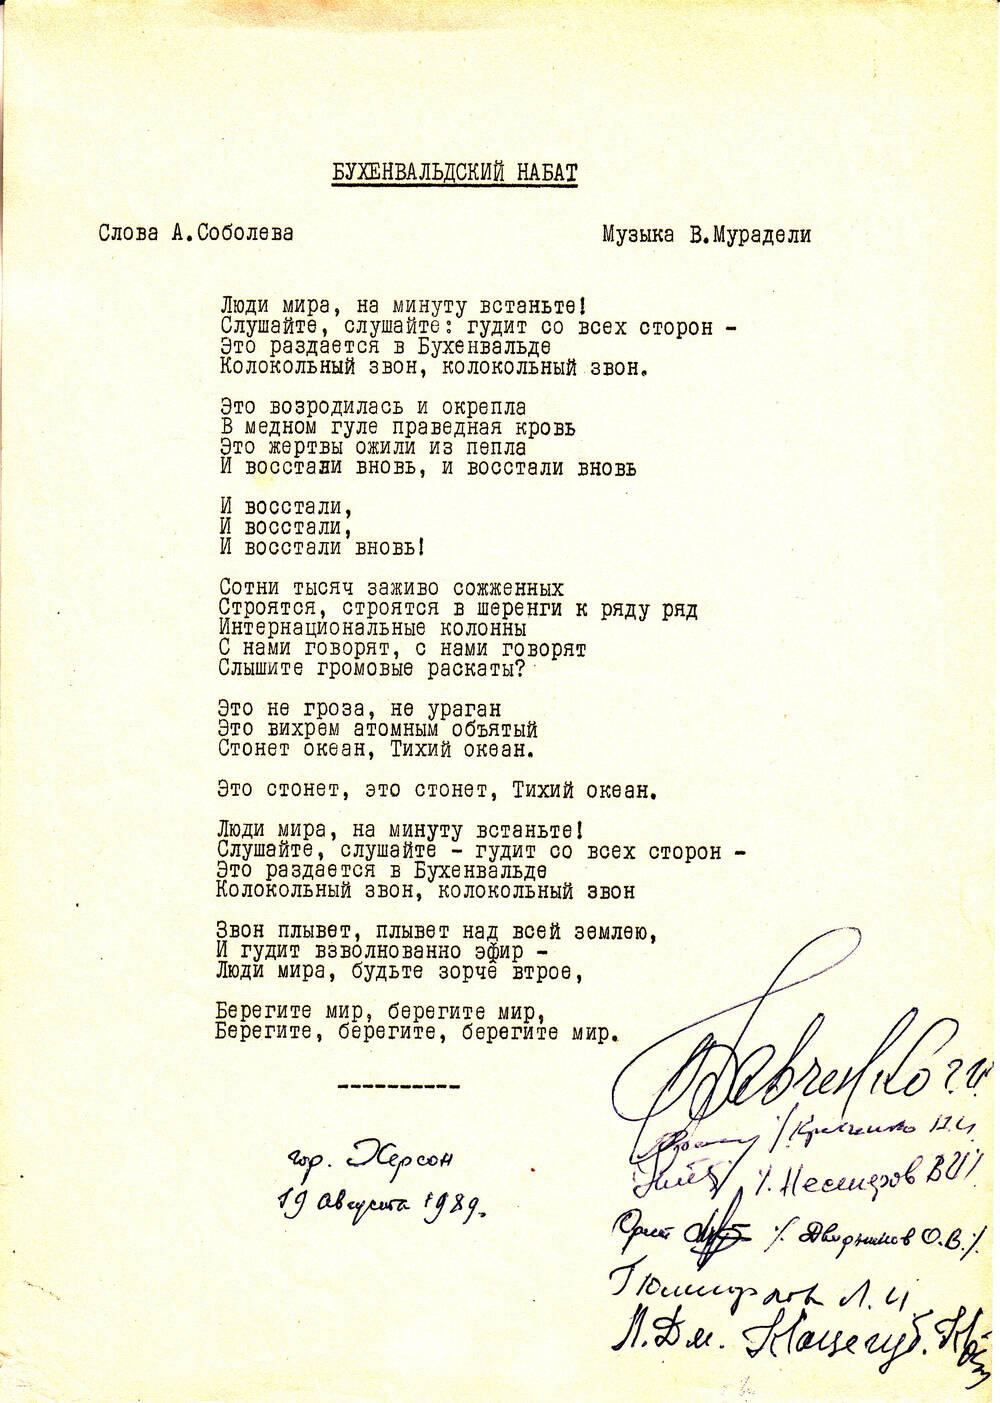 Текст песни Бухенвальдский набат, подаренный музею Дворниковым Орестом Васильевичем и подписанный бывшими узниками концлагеря Бухенвальд.